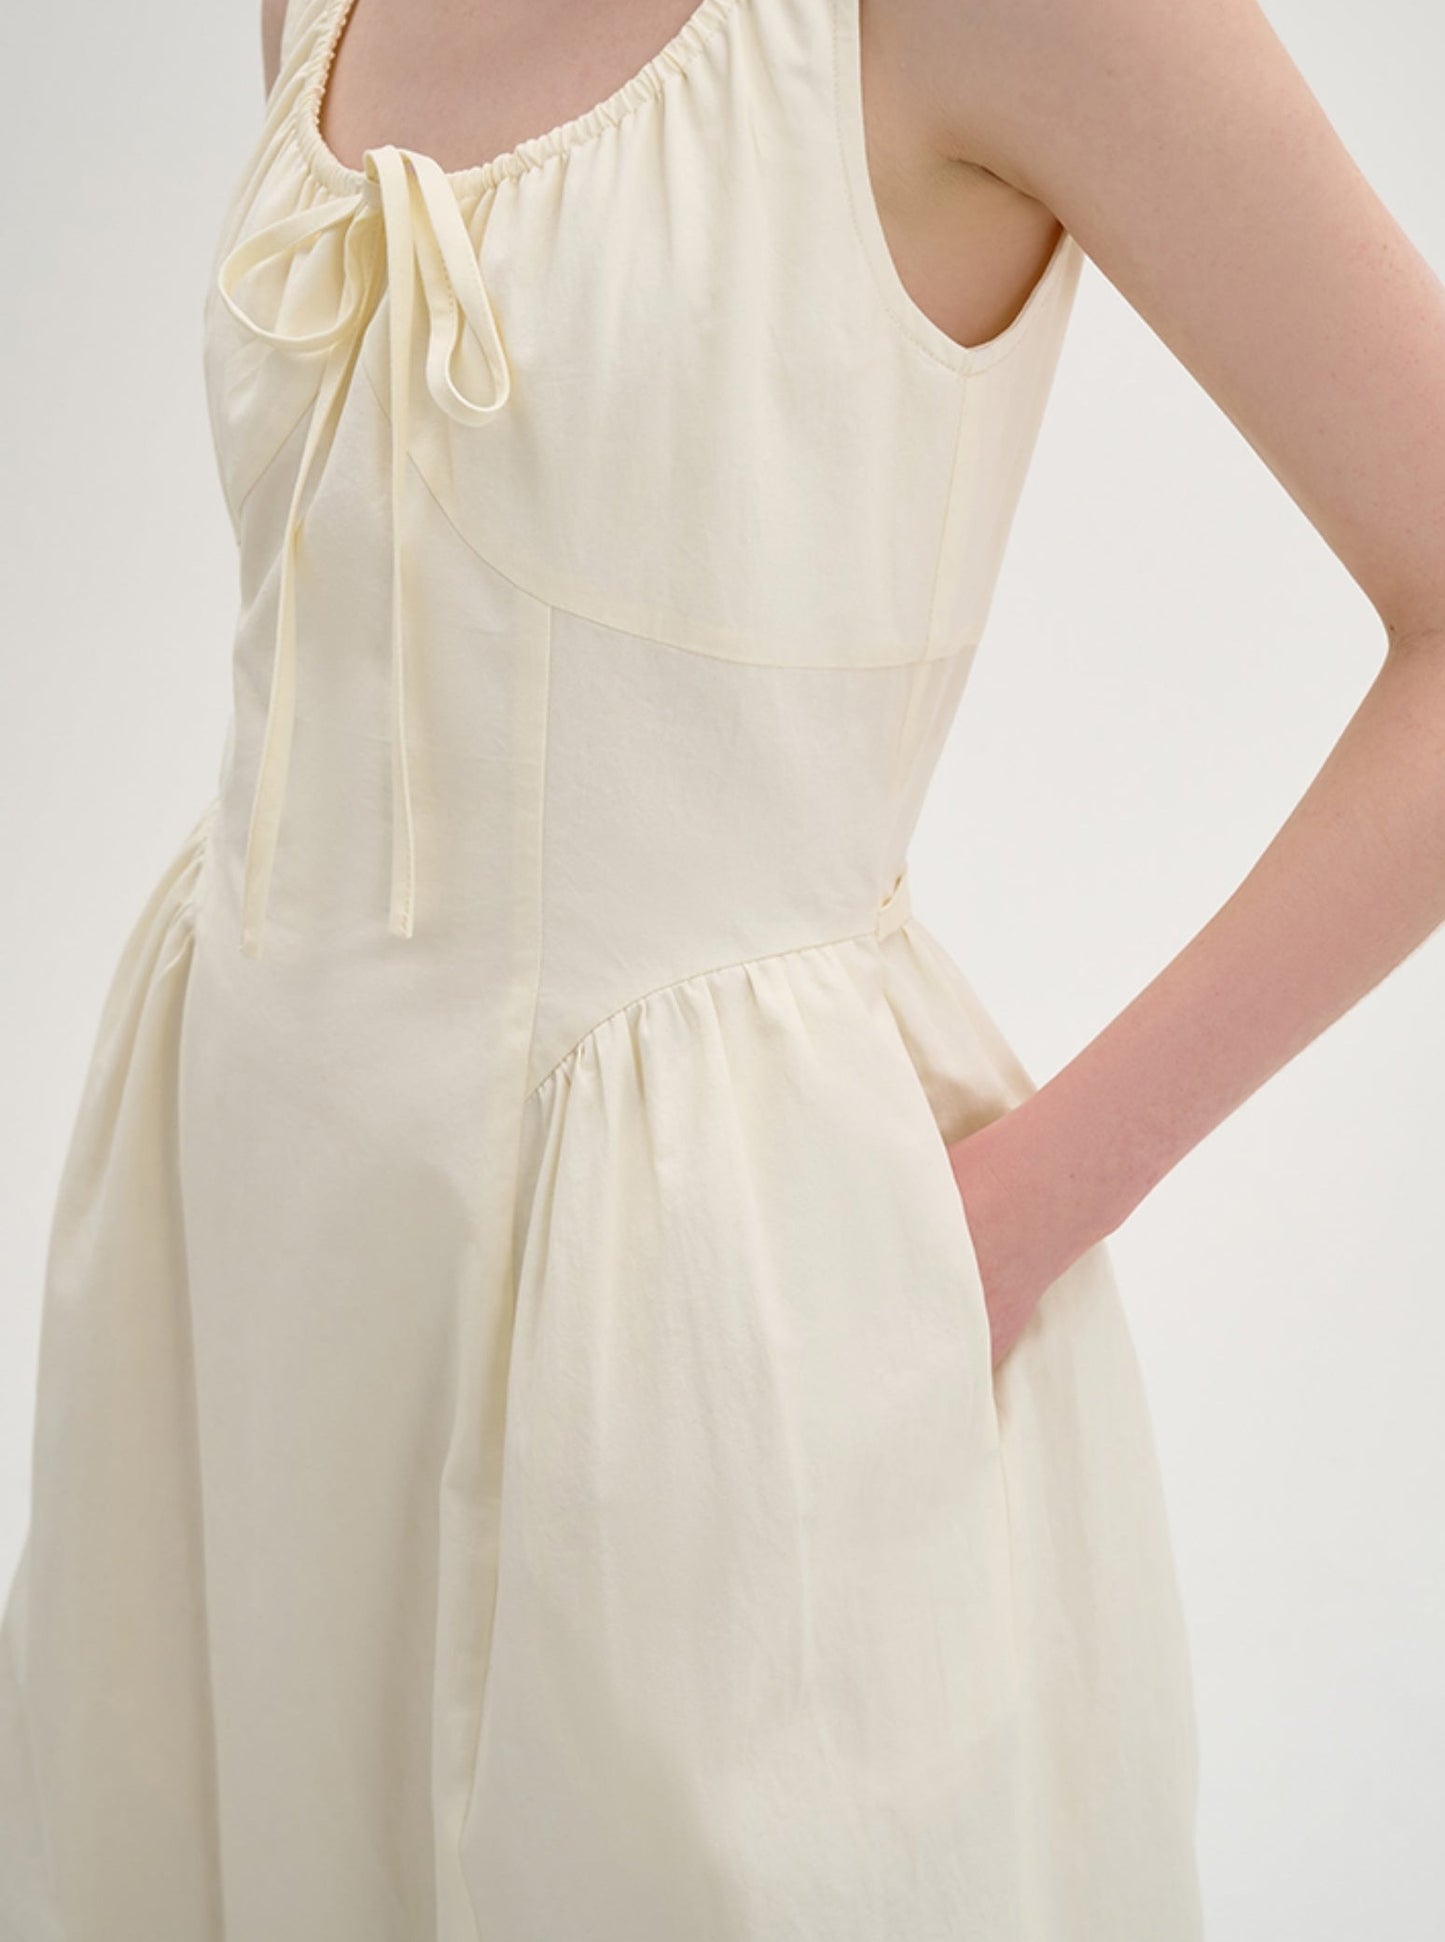 High Quality Sleevele Swaist Design Long Skirt